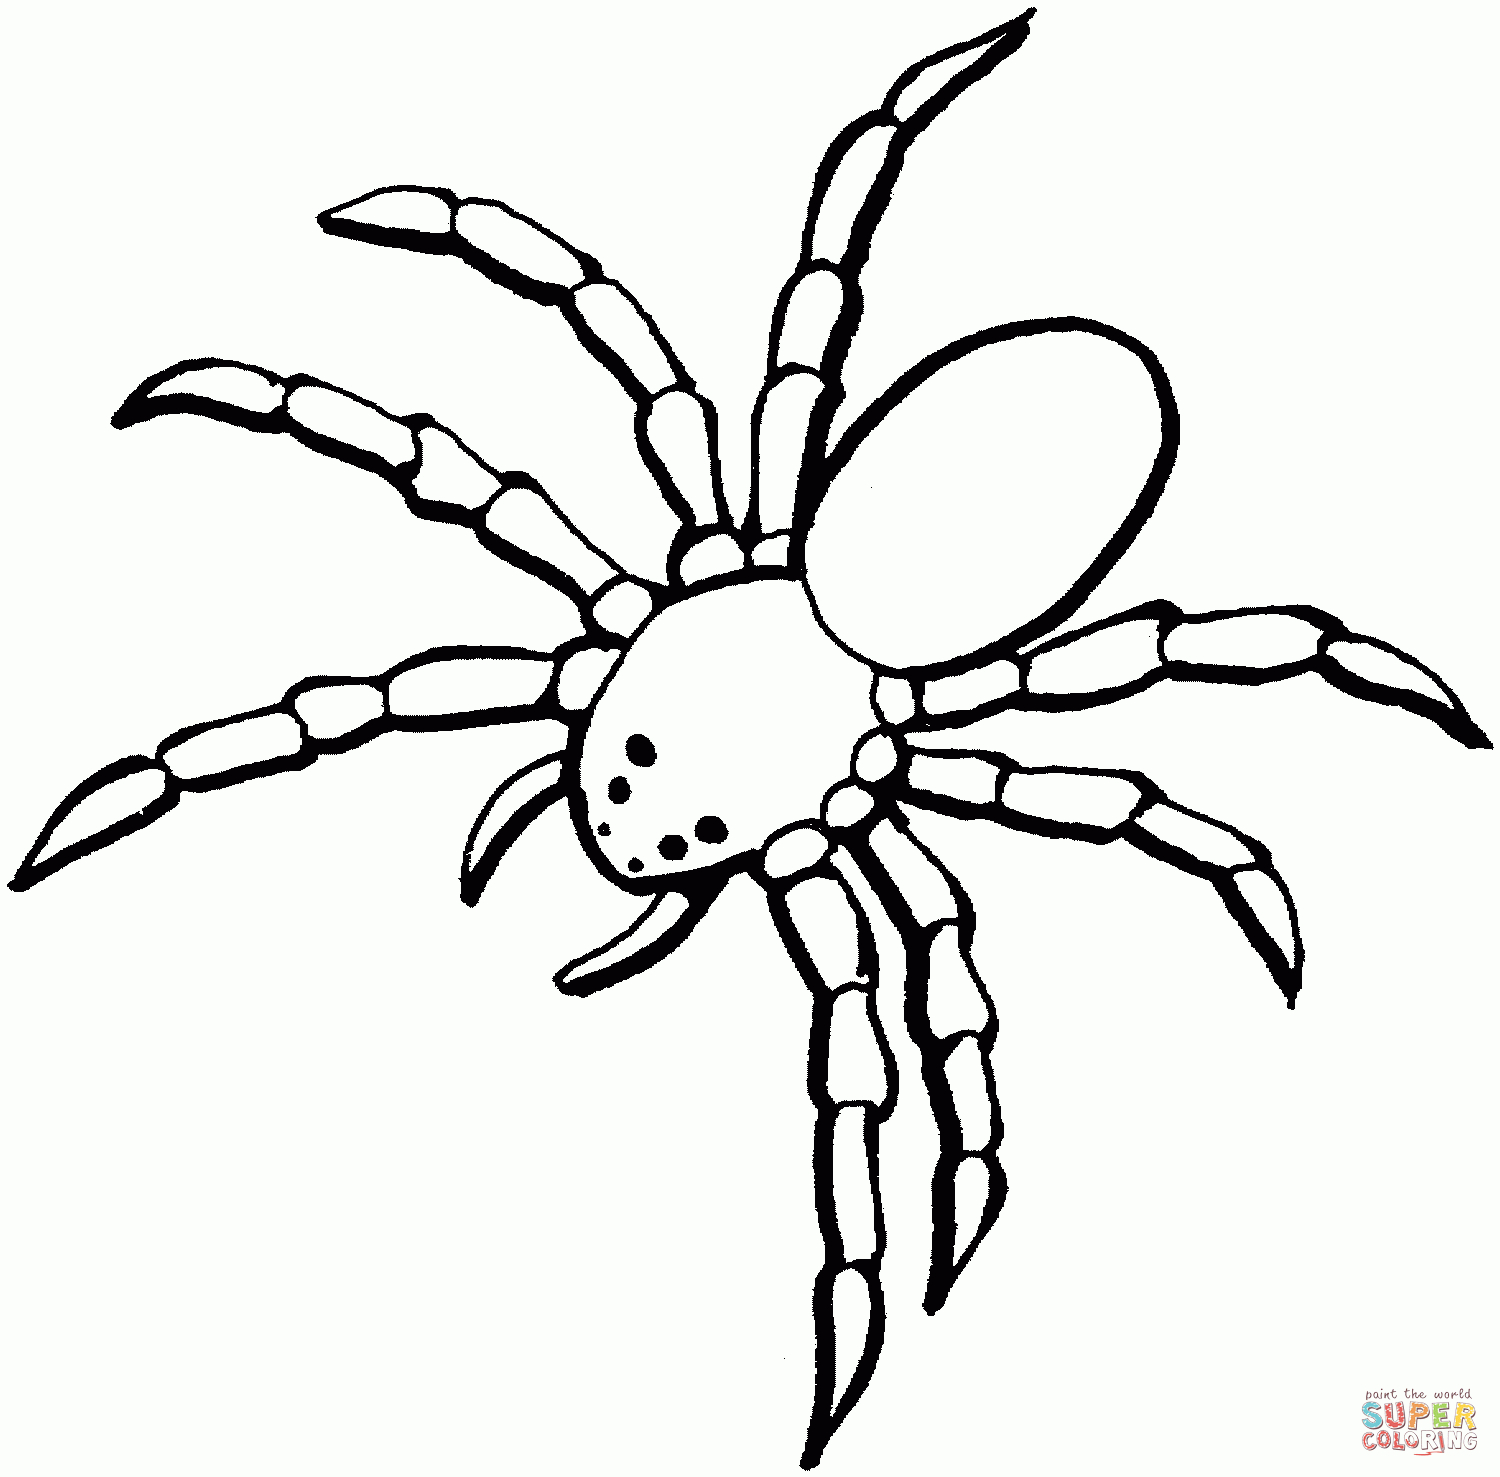 Ausmalbilder Spinne - Malvorlagen Kostenlos Zum Ausdrucken innen Spinnen Ausmalbilder Zum Ausdrucken